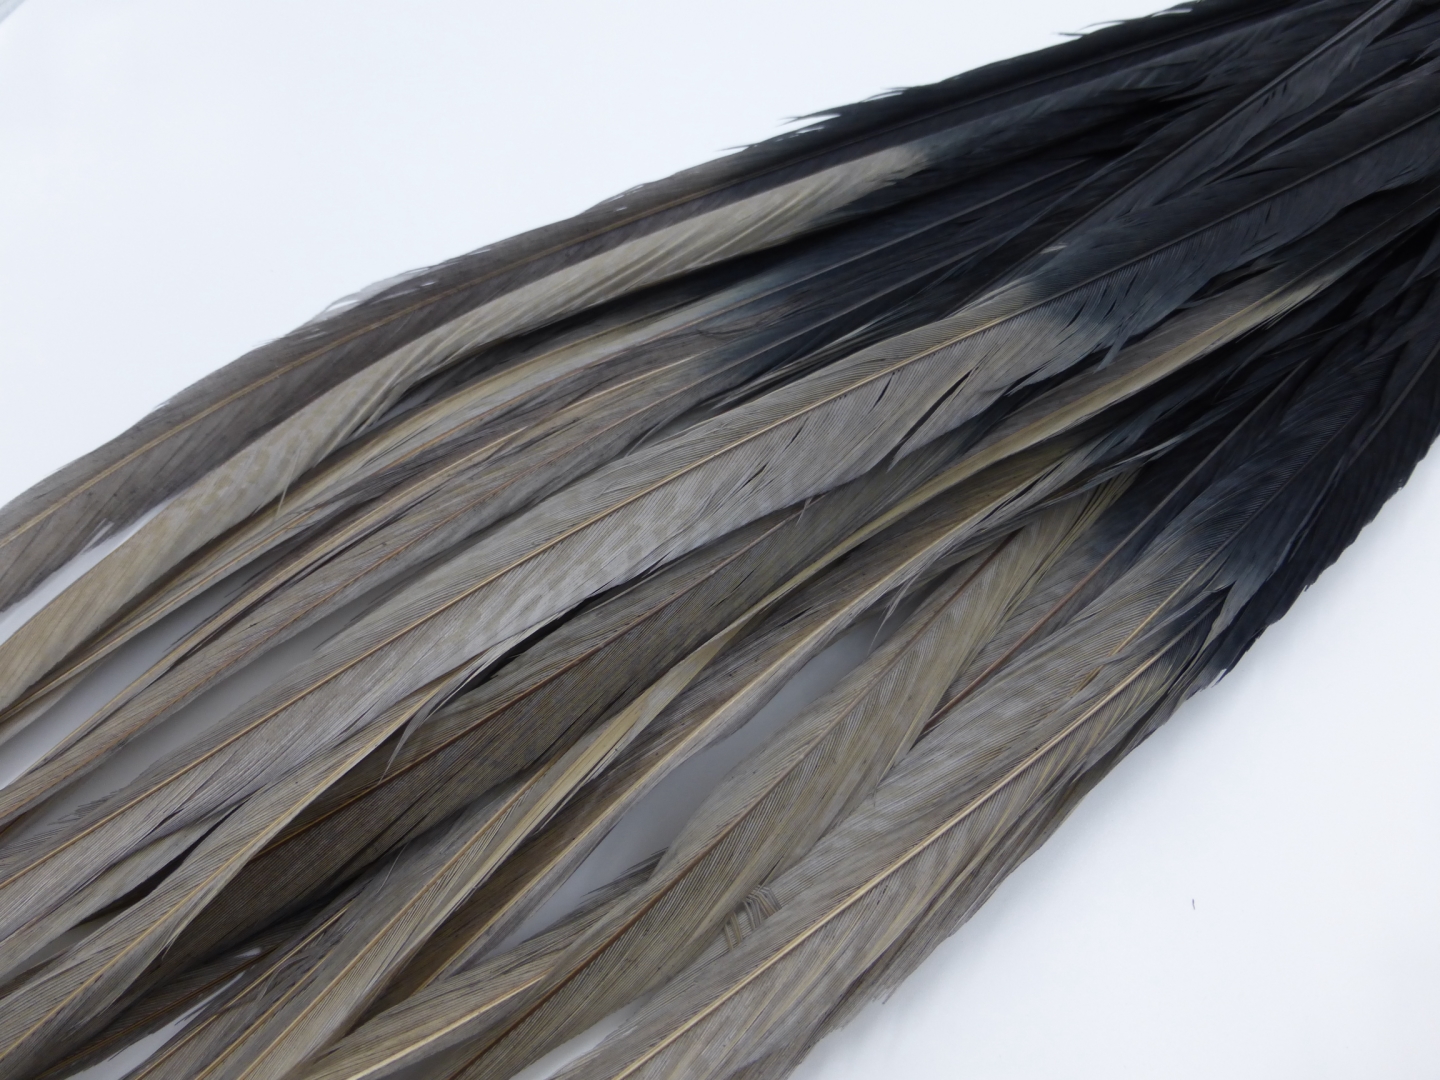 Pheasant Tail Blue Dun 70-75 cm